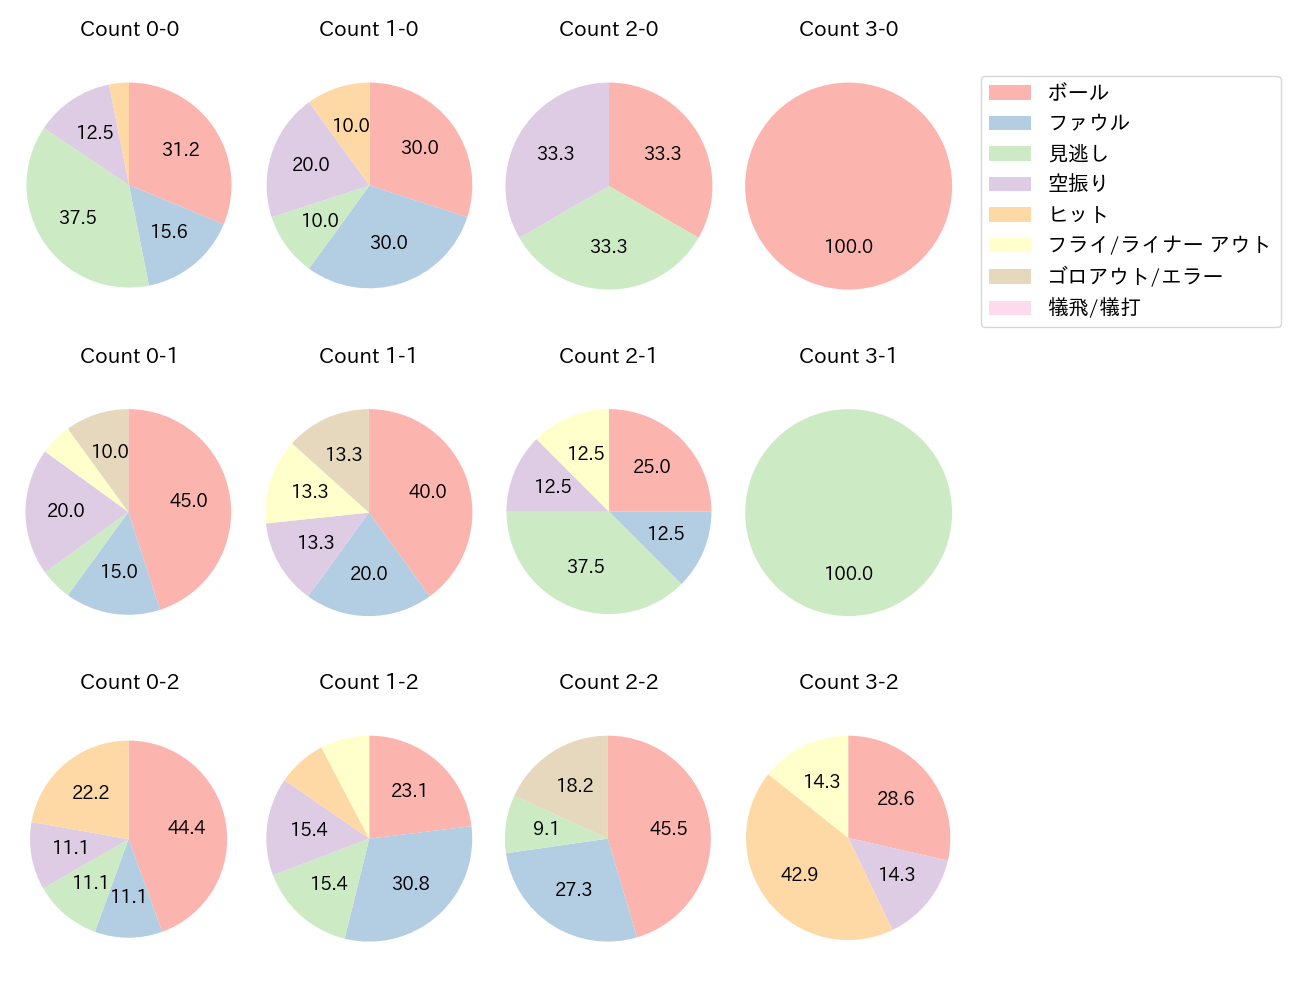 立岡 宗一郎の球数分布(2022年5月)